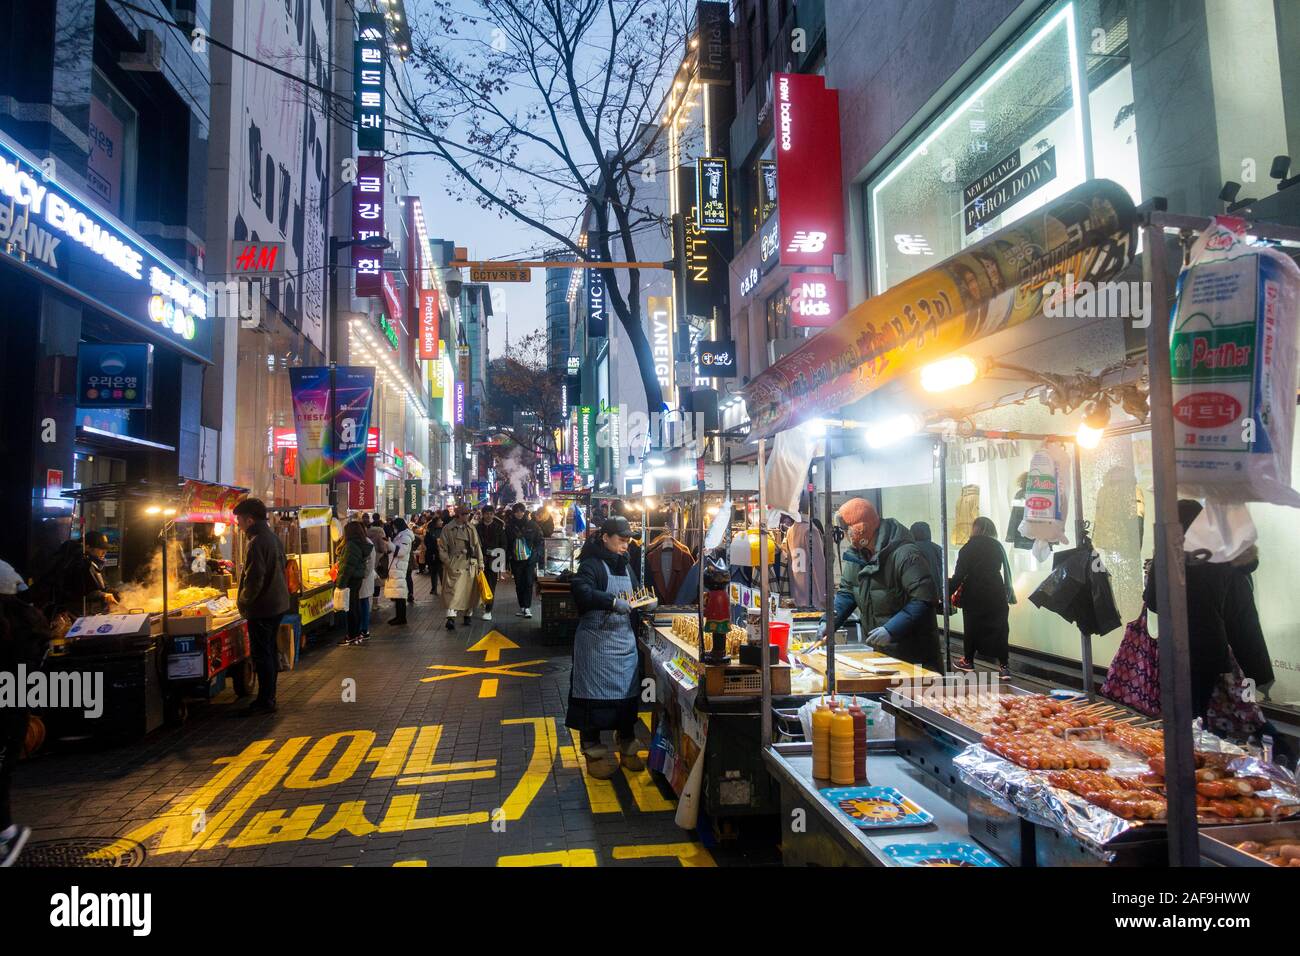 Séoul, Corée du Sud - Décembre 6th, 2019 : le district de Myeongdong à soir, site populaire pour les produits cosmétiques et de beauté et de l'alimentation de rue. Banque D'Images